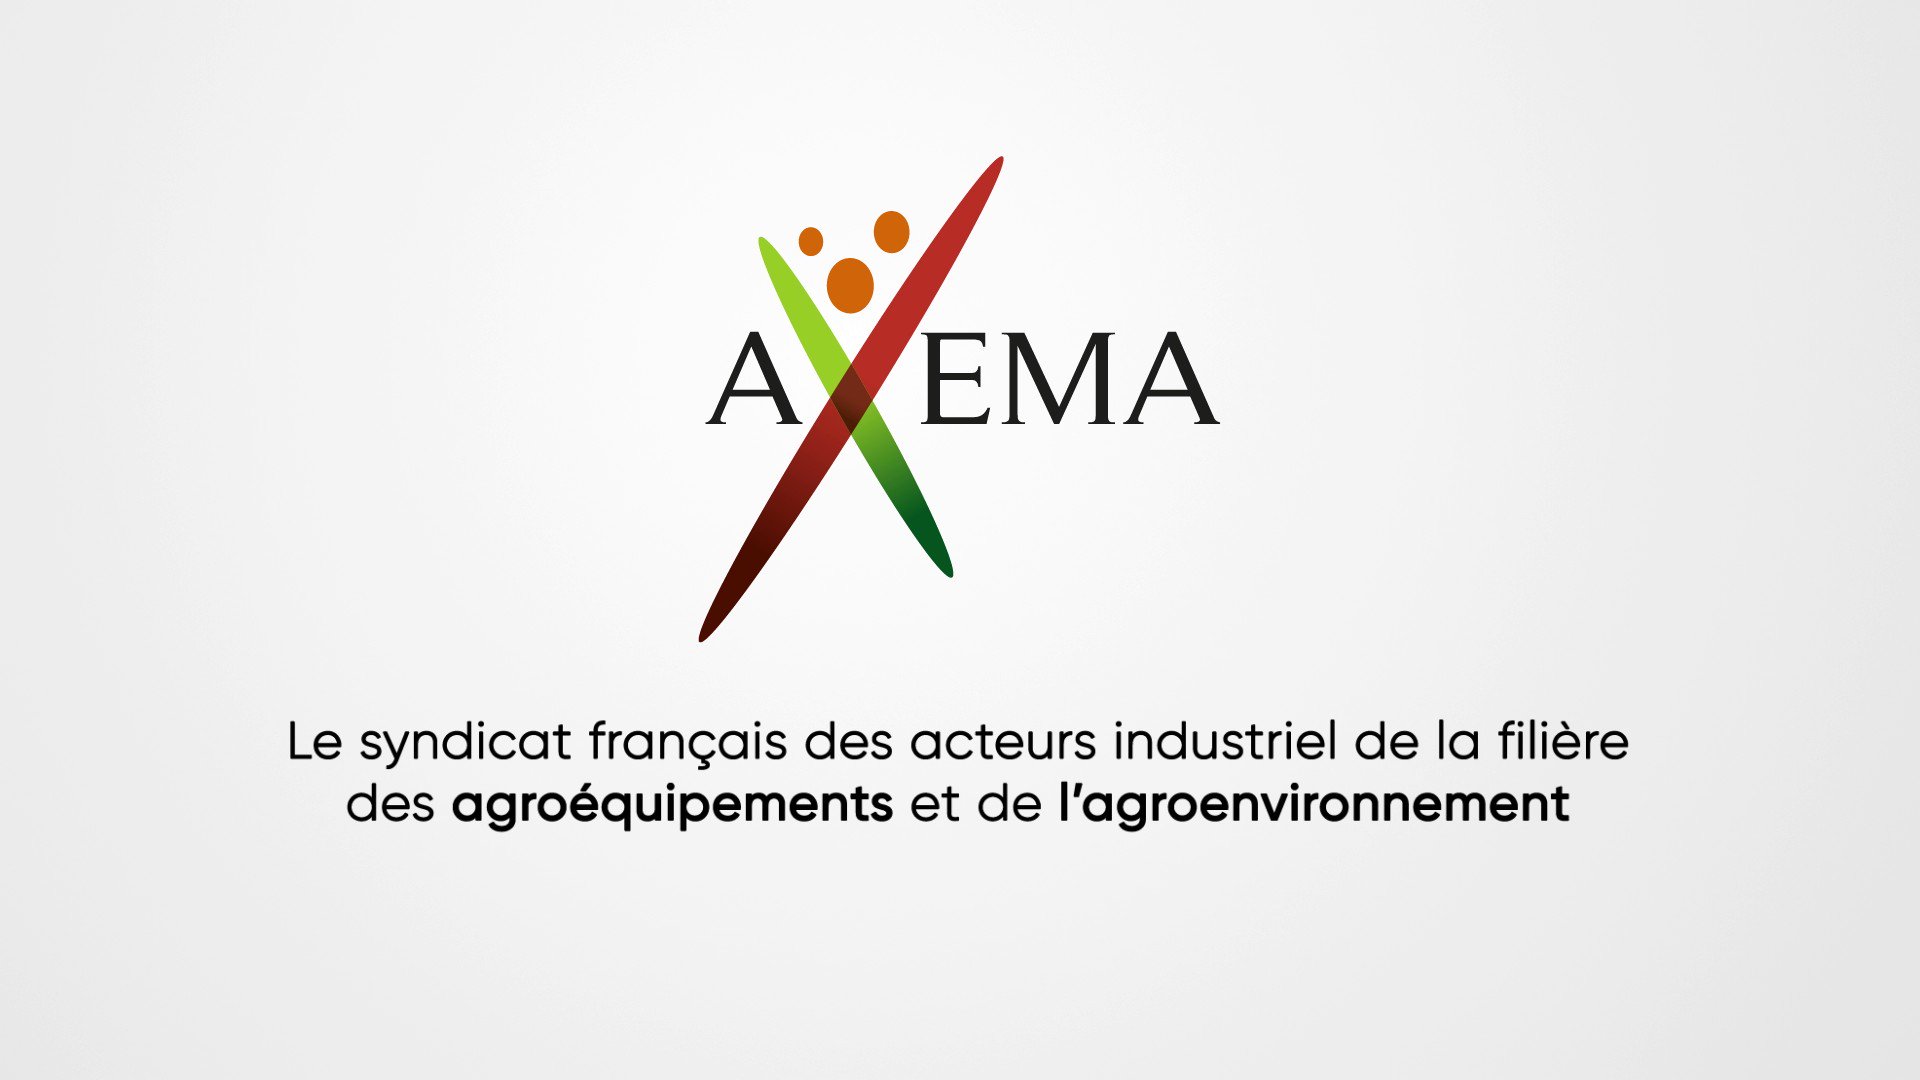 Logo Axema - Syndicat français des acteurs industriels de la filière des agroéquipements et de l'agroenvironnement.